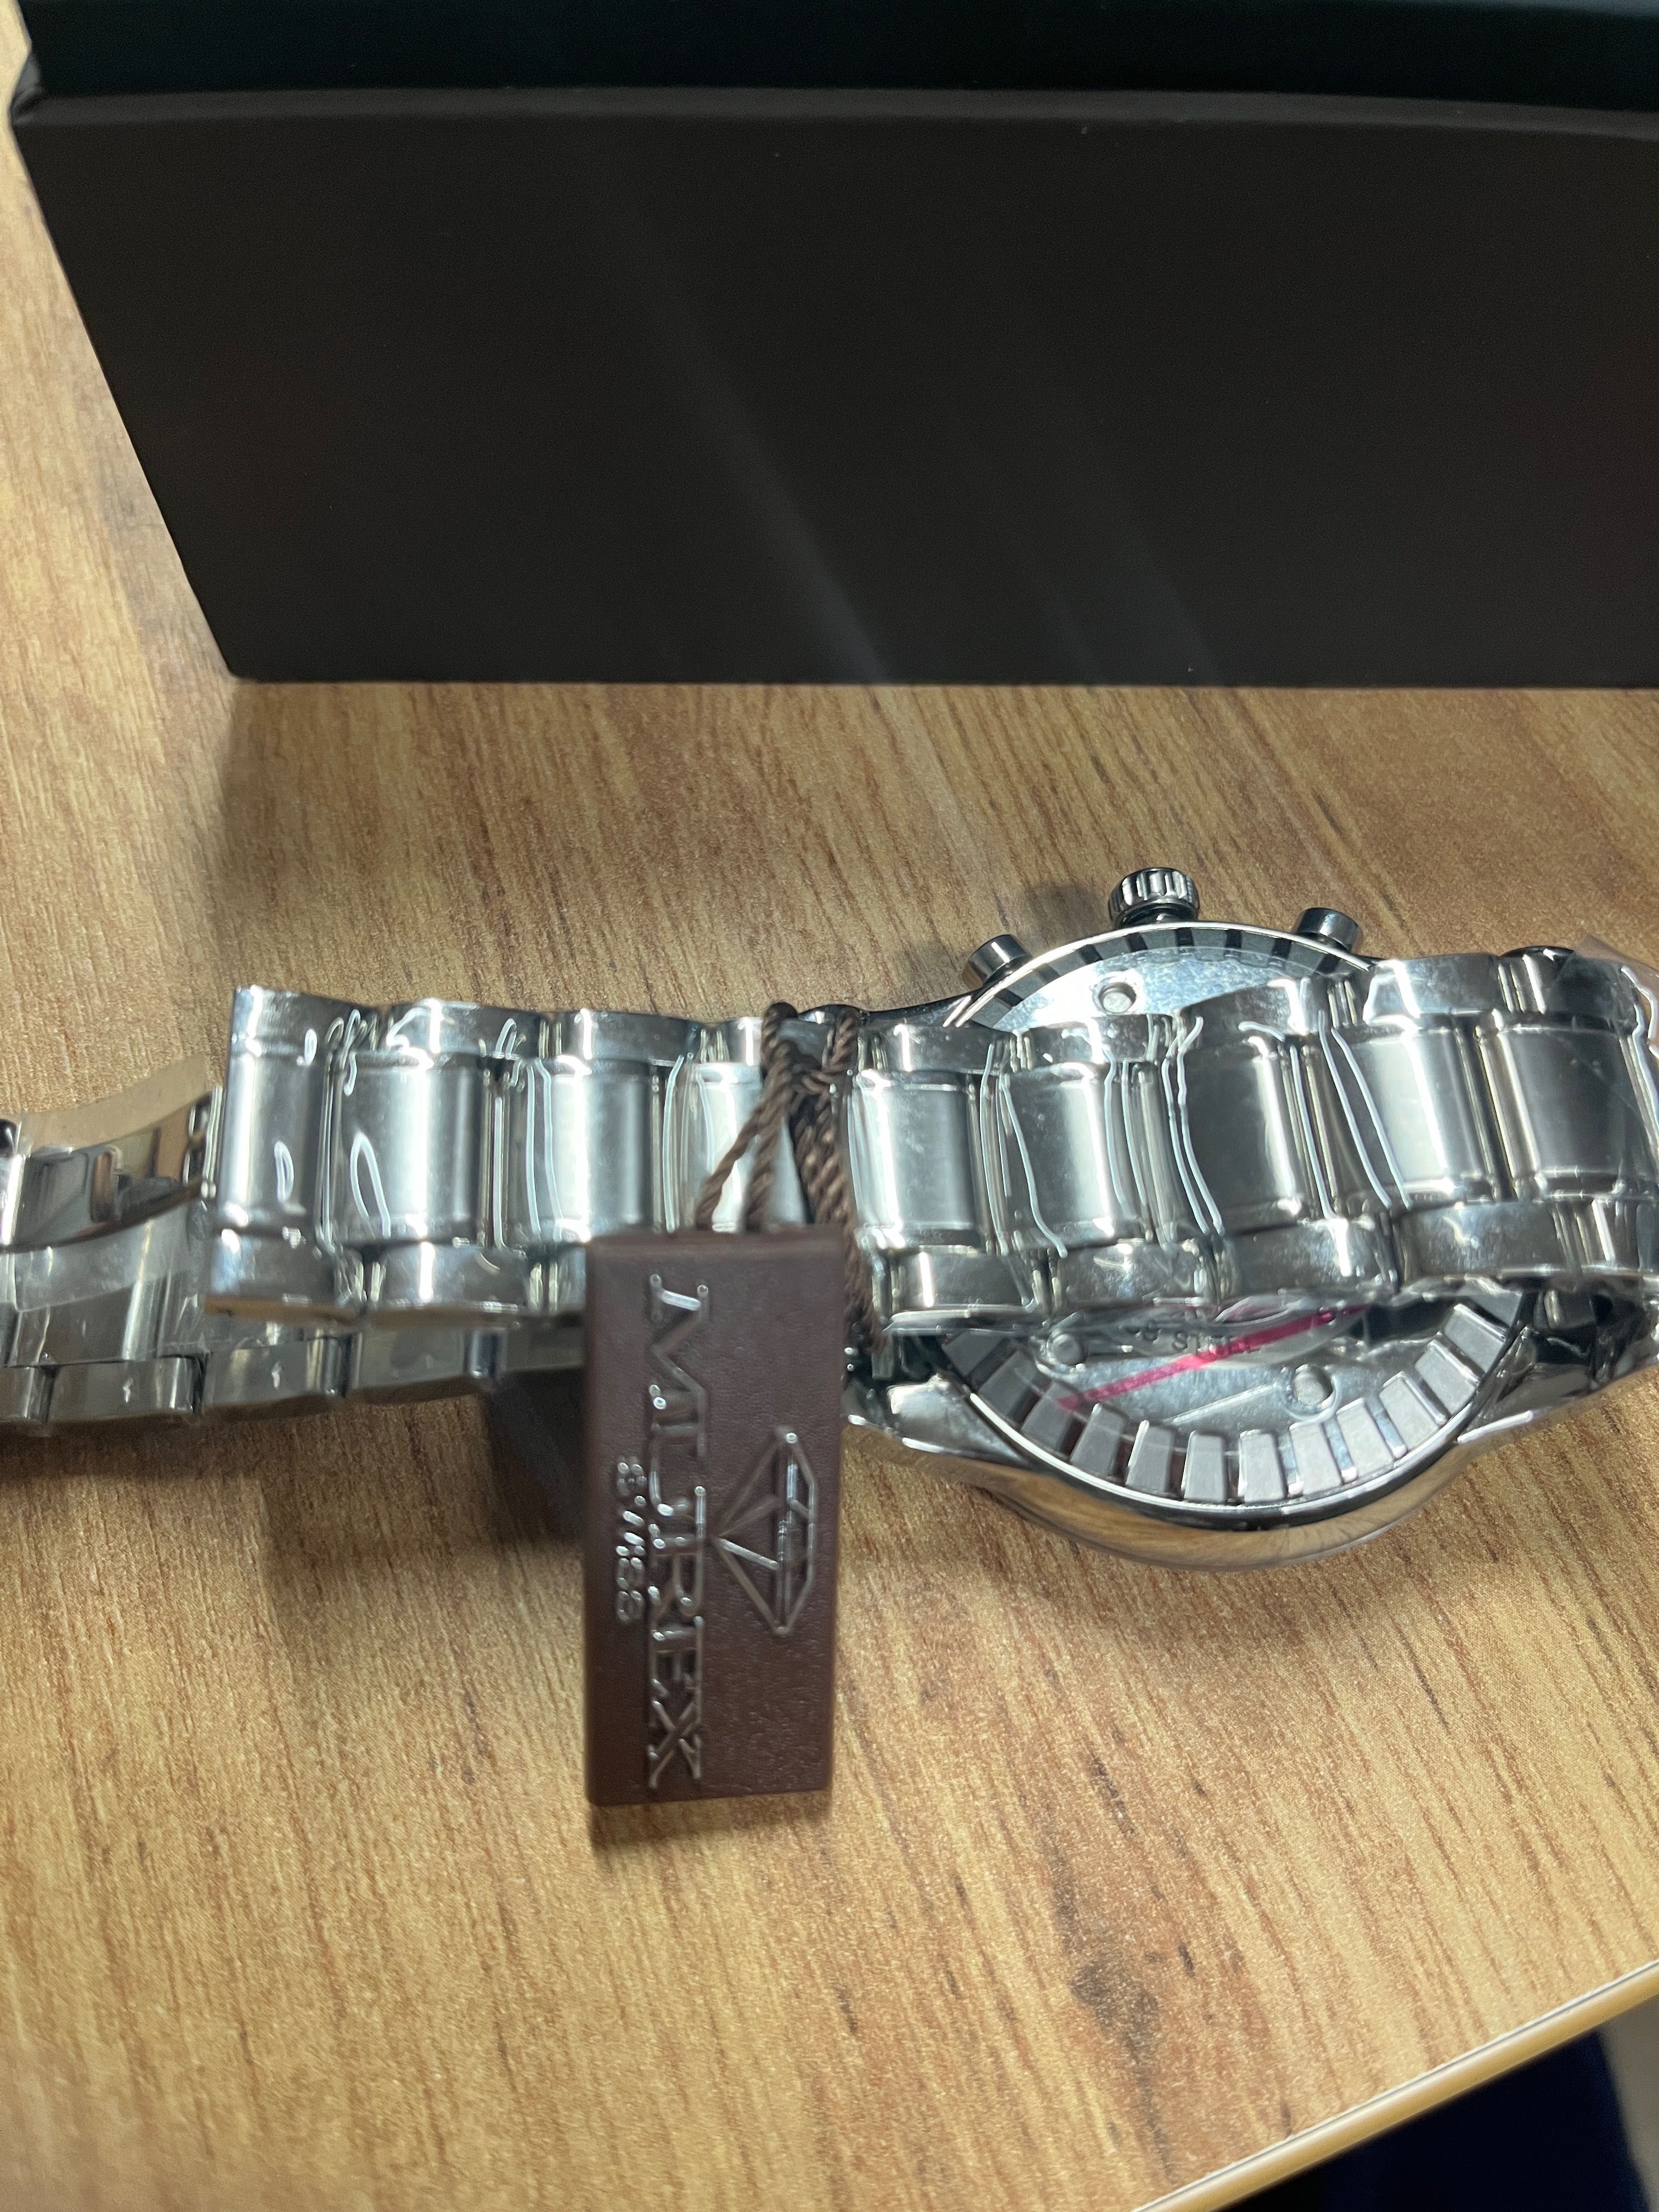 Murex MUC541-SS-1 мъжки швейцарски часовник ЧИСТО НОВ